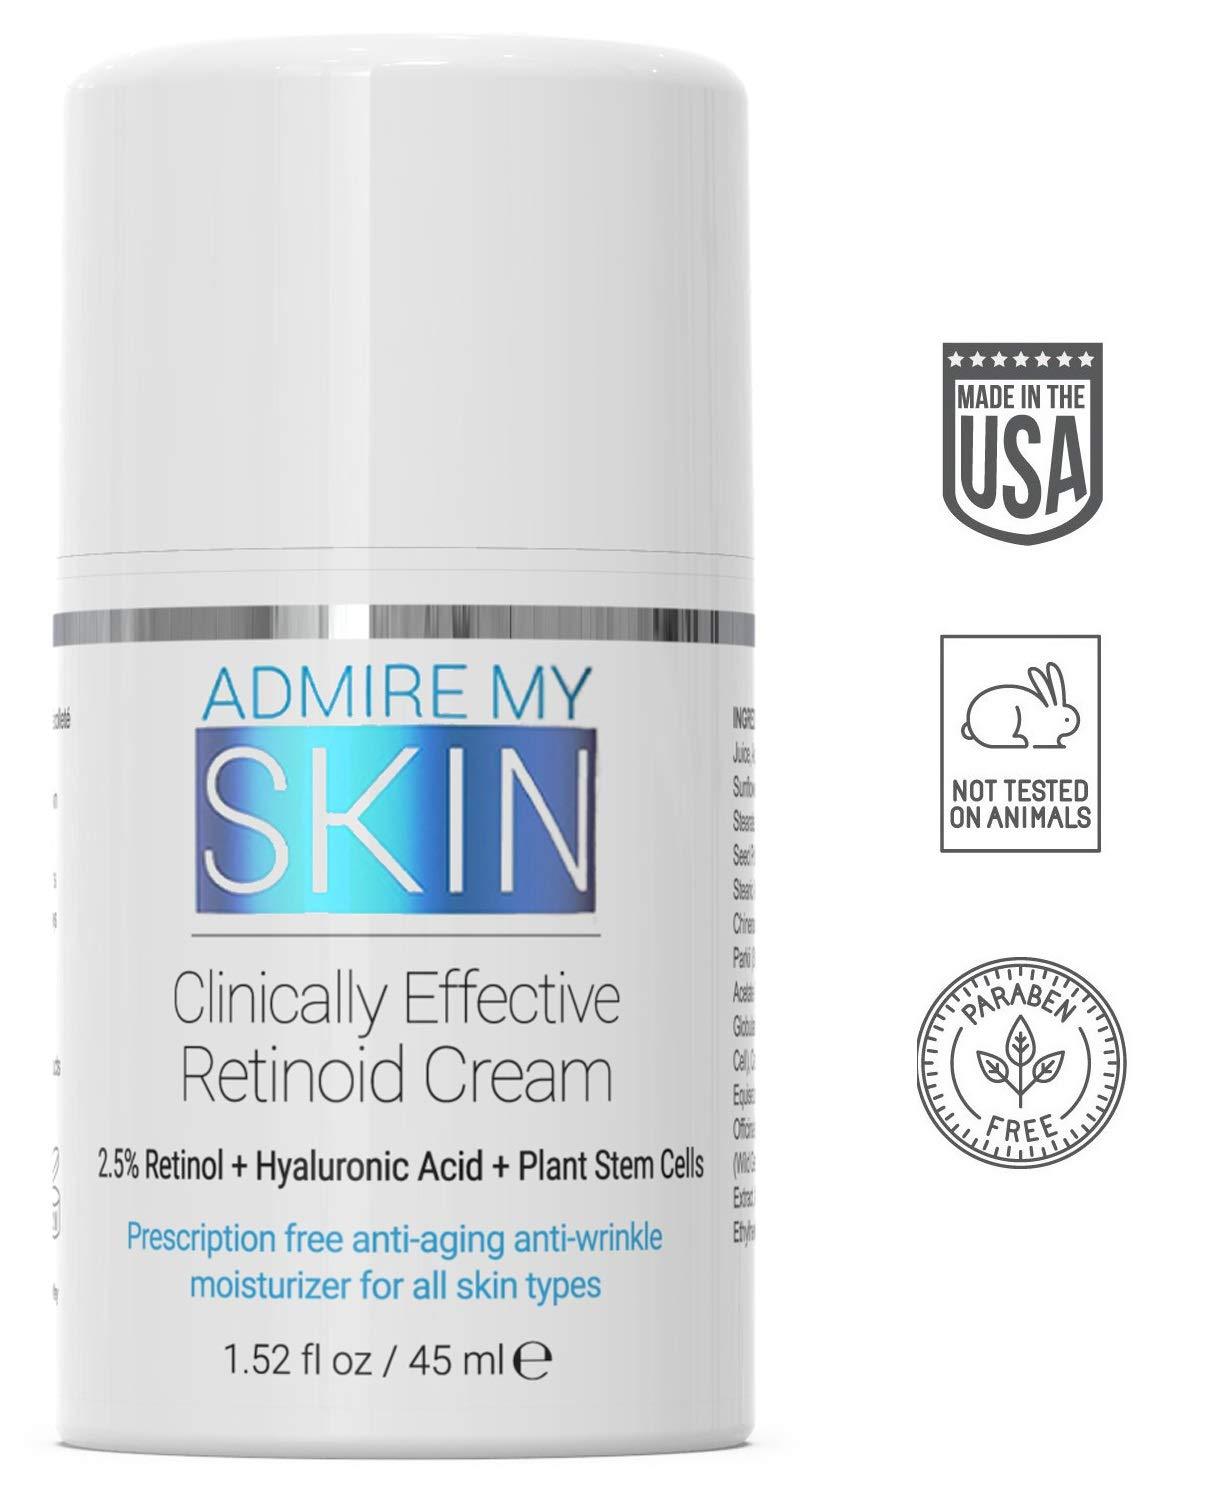 Crème rétinoïde cliniquement efficace - rétinol en vente libre - admire ma peau